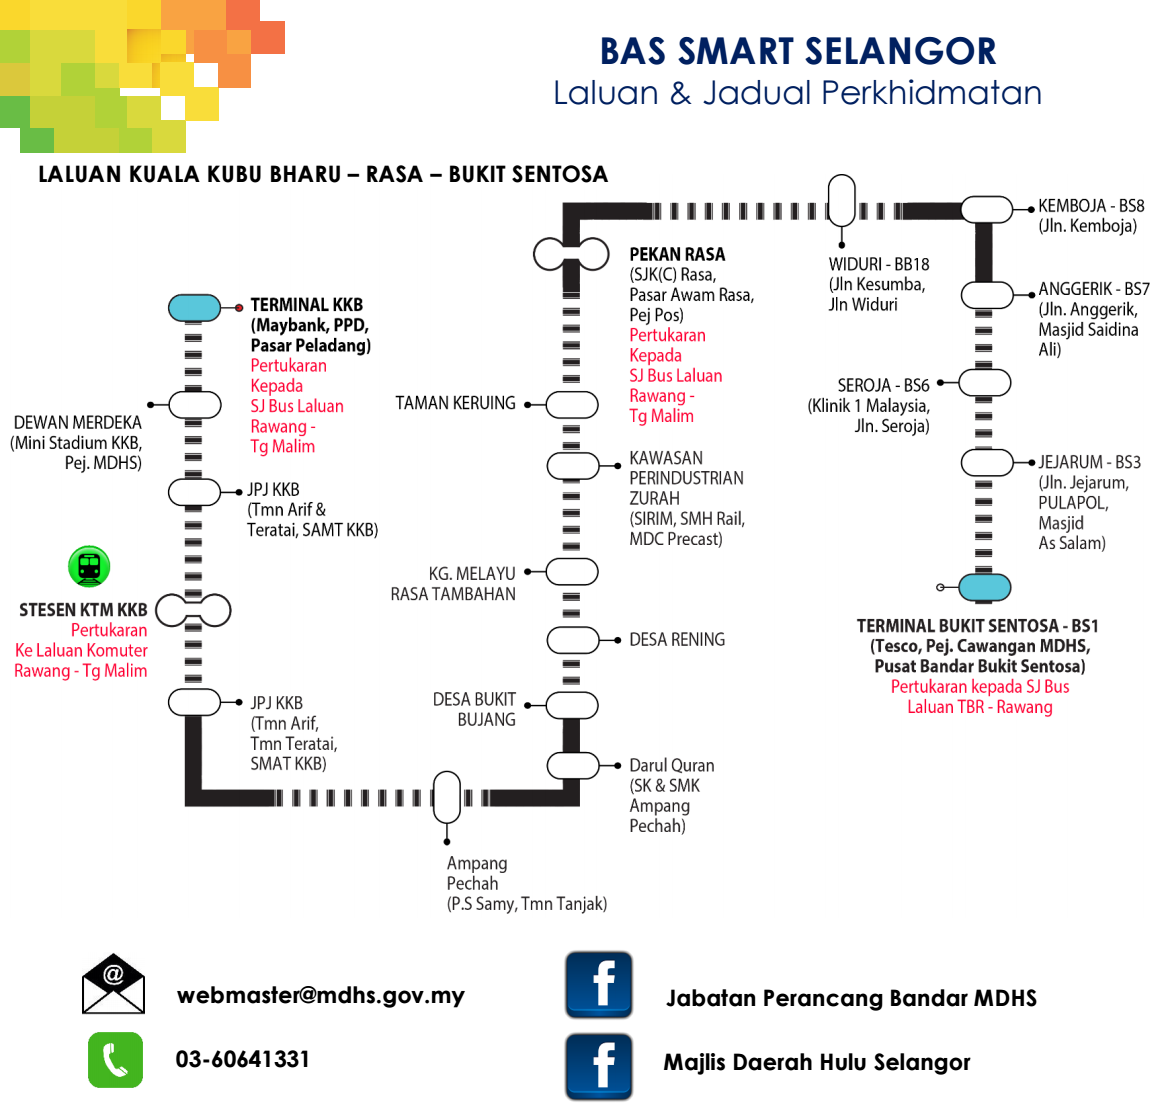 Bas Percuma Smart Selangor Free Selangorku Bus Service Kuala Kubu Bharu Kkb Rasa Bukit Sentosa